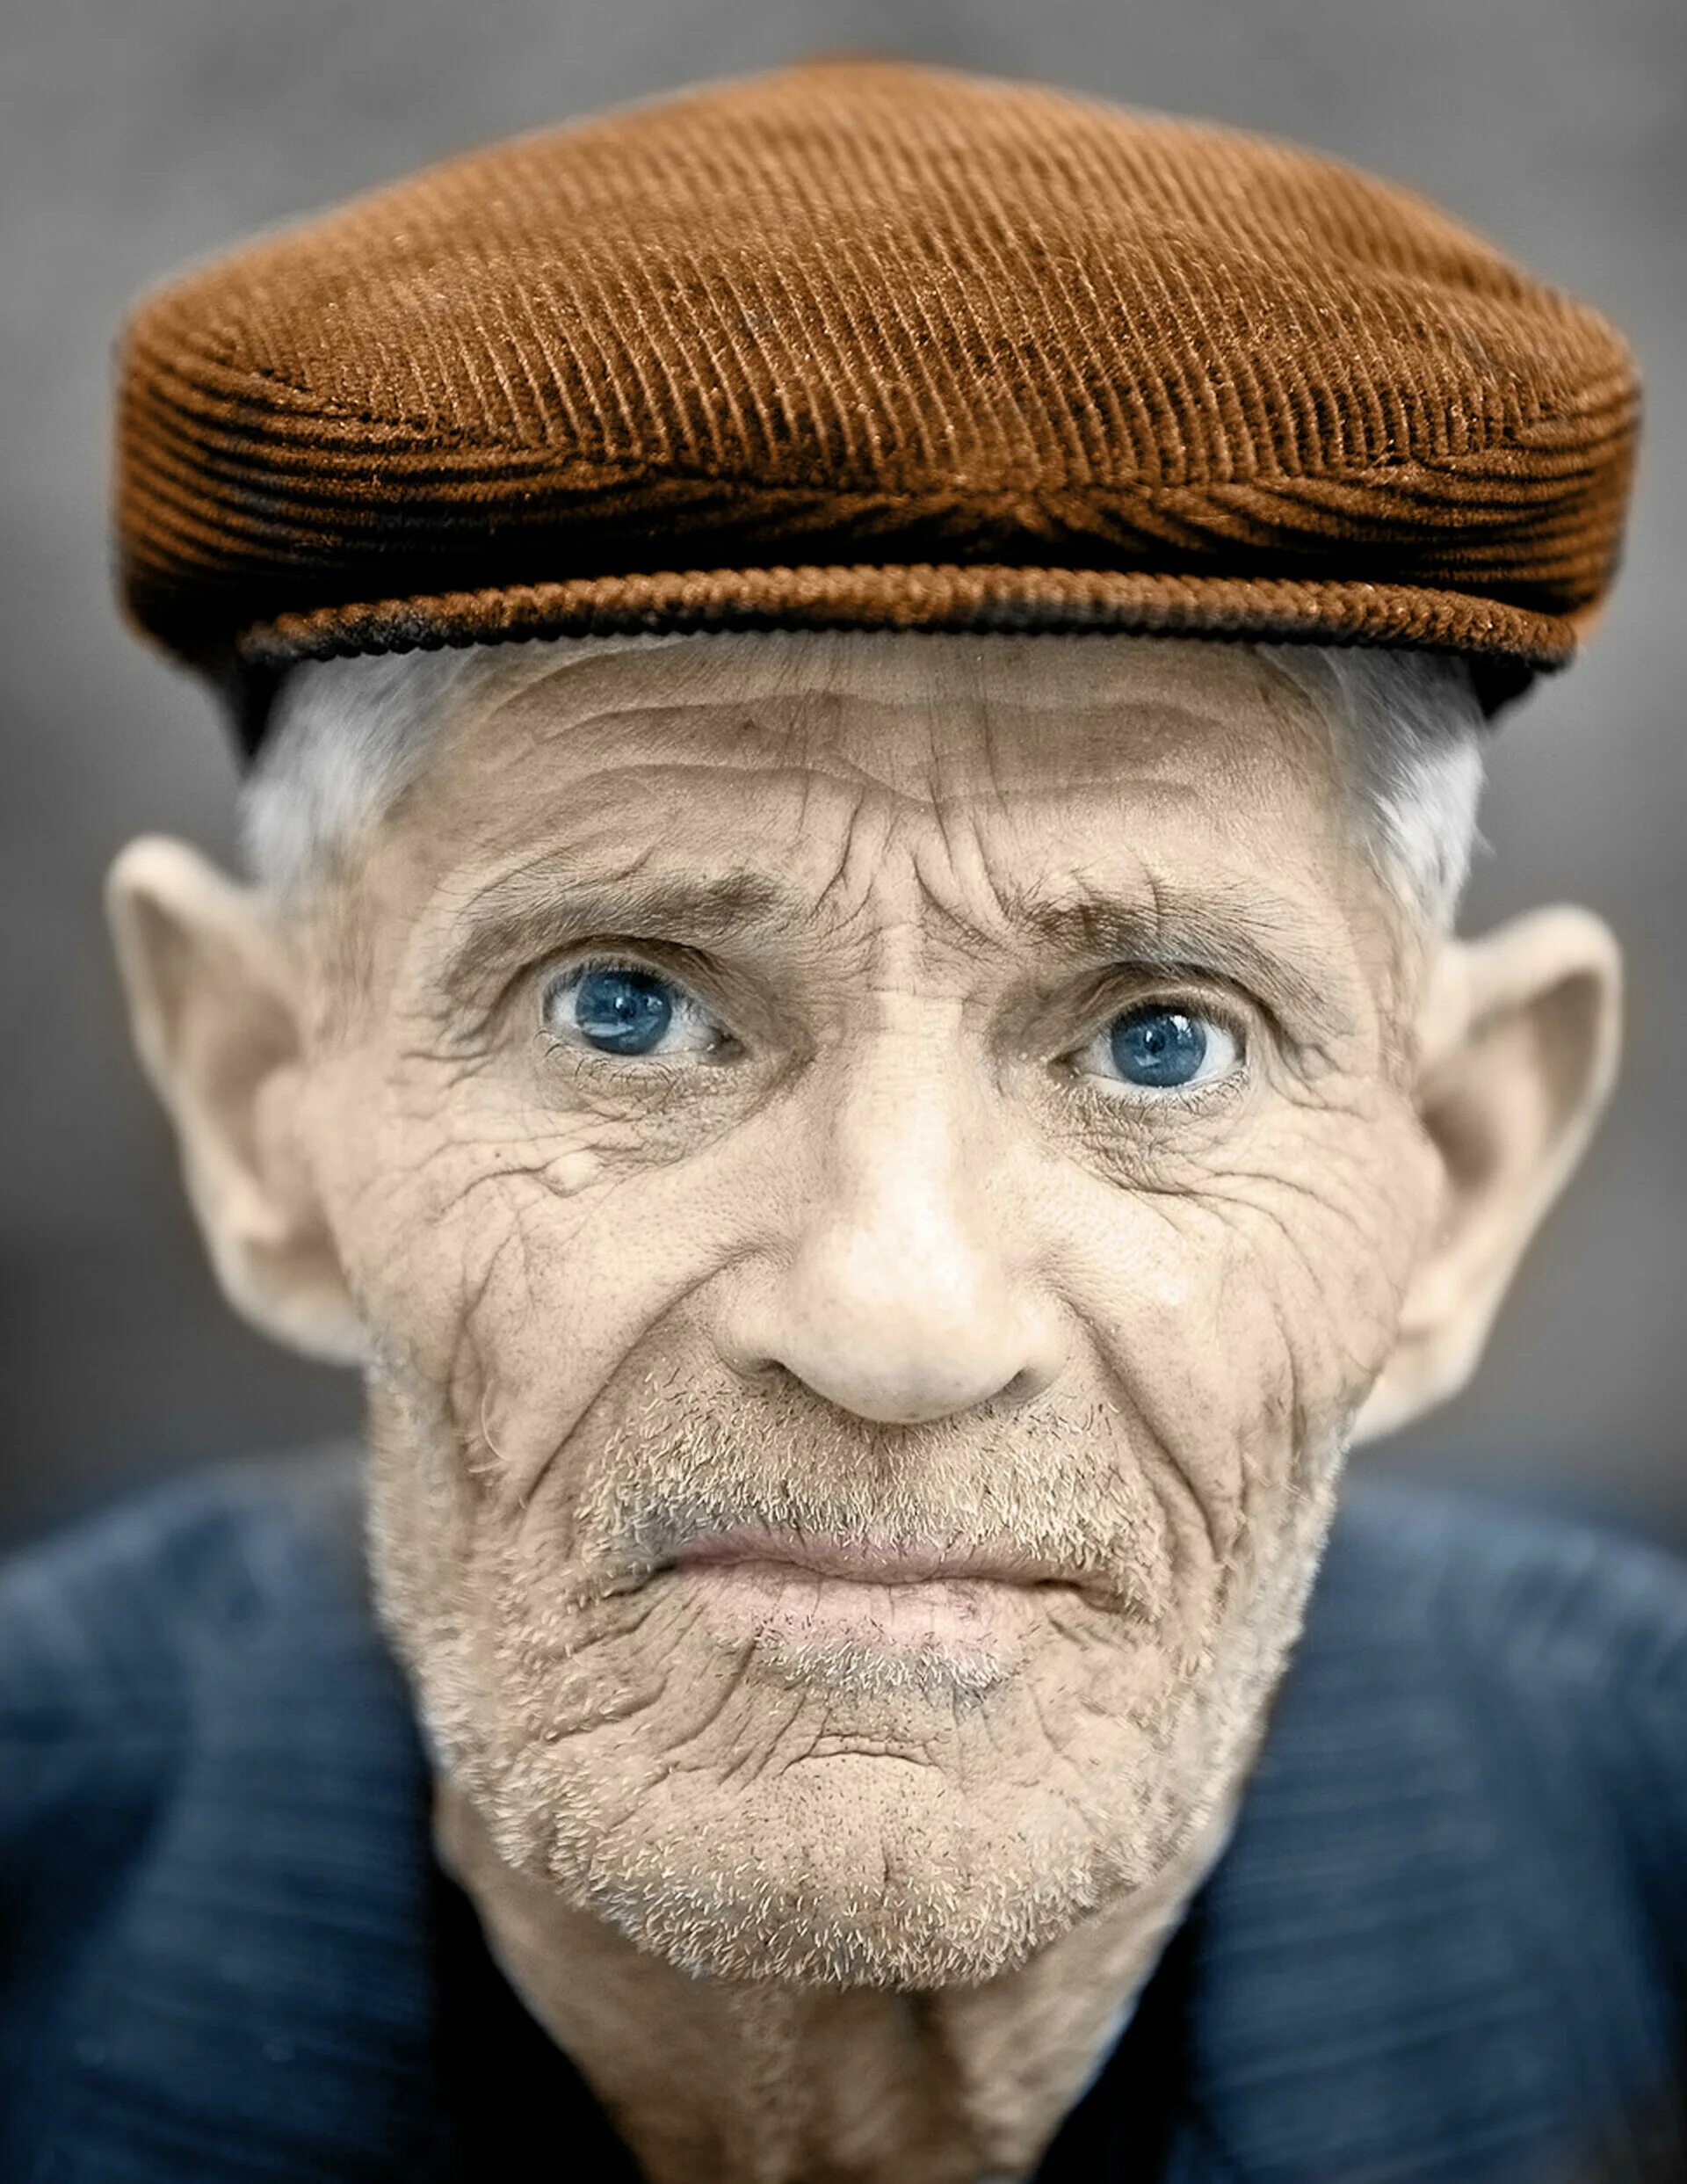 Лицо старика. Портрет человека. Пожилой мужчина. Фотопортрет старика.